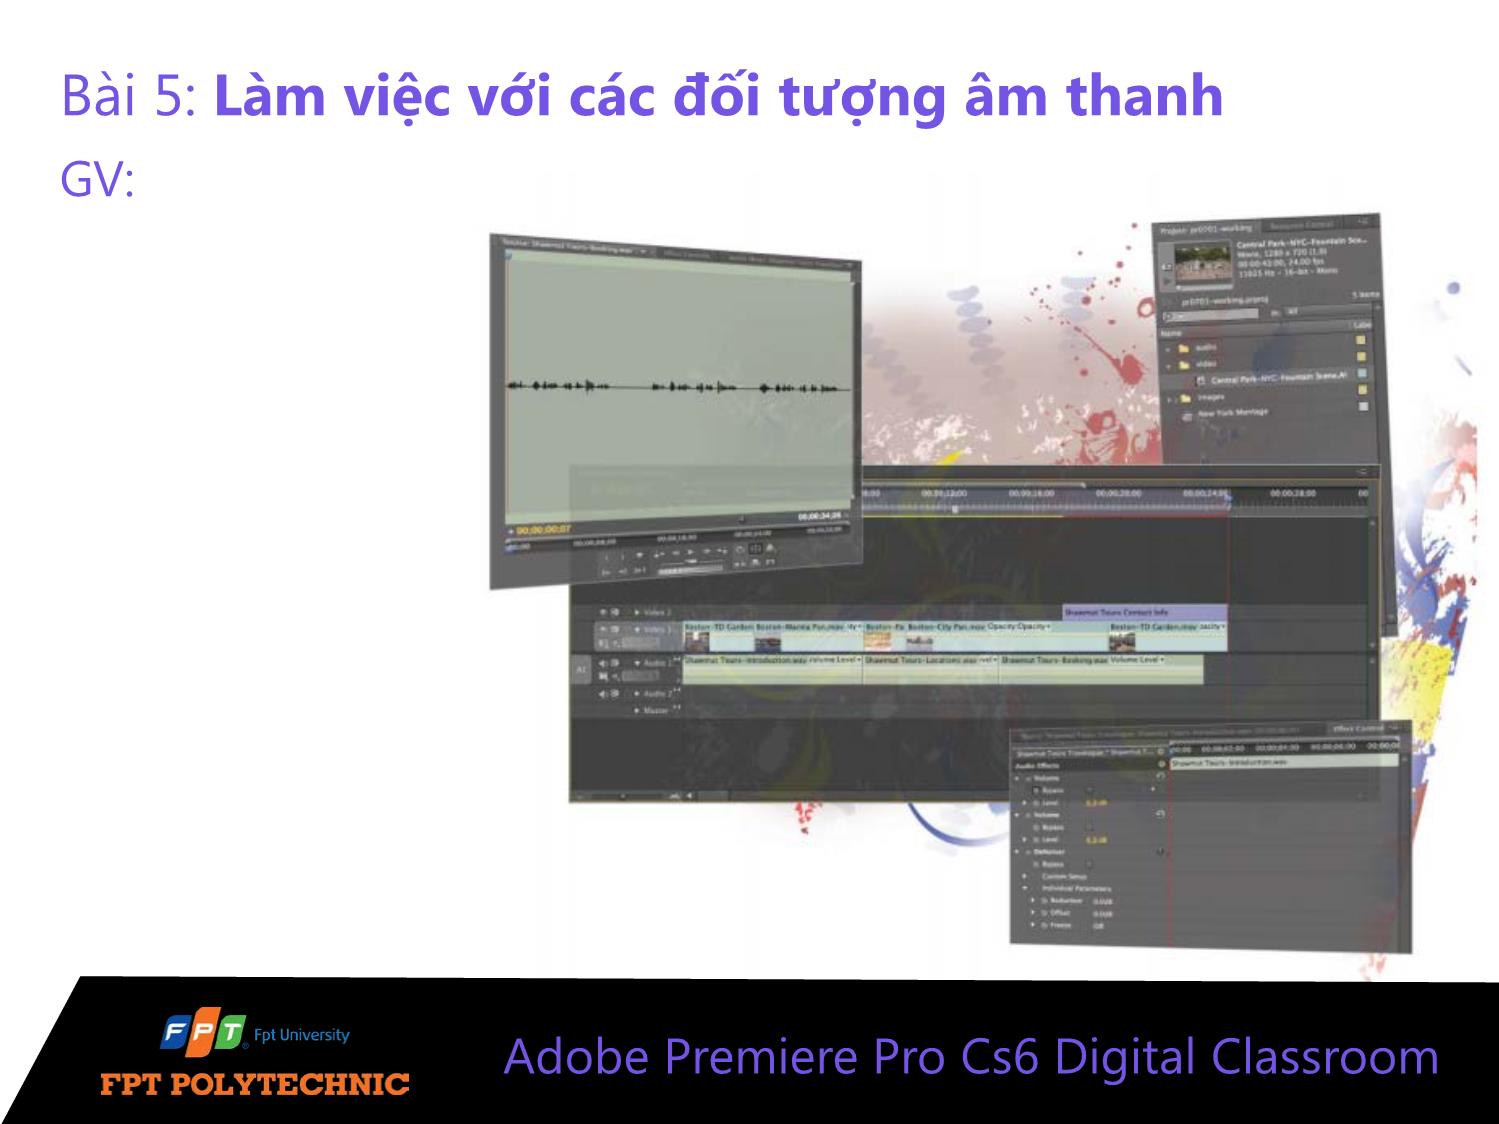 Bài giảng Xử lý hậu kỳ với Adobe Premiere Pro Cs6 - Bài 5: Làm việc với các đối tượng âm thanh trang 1